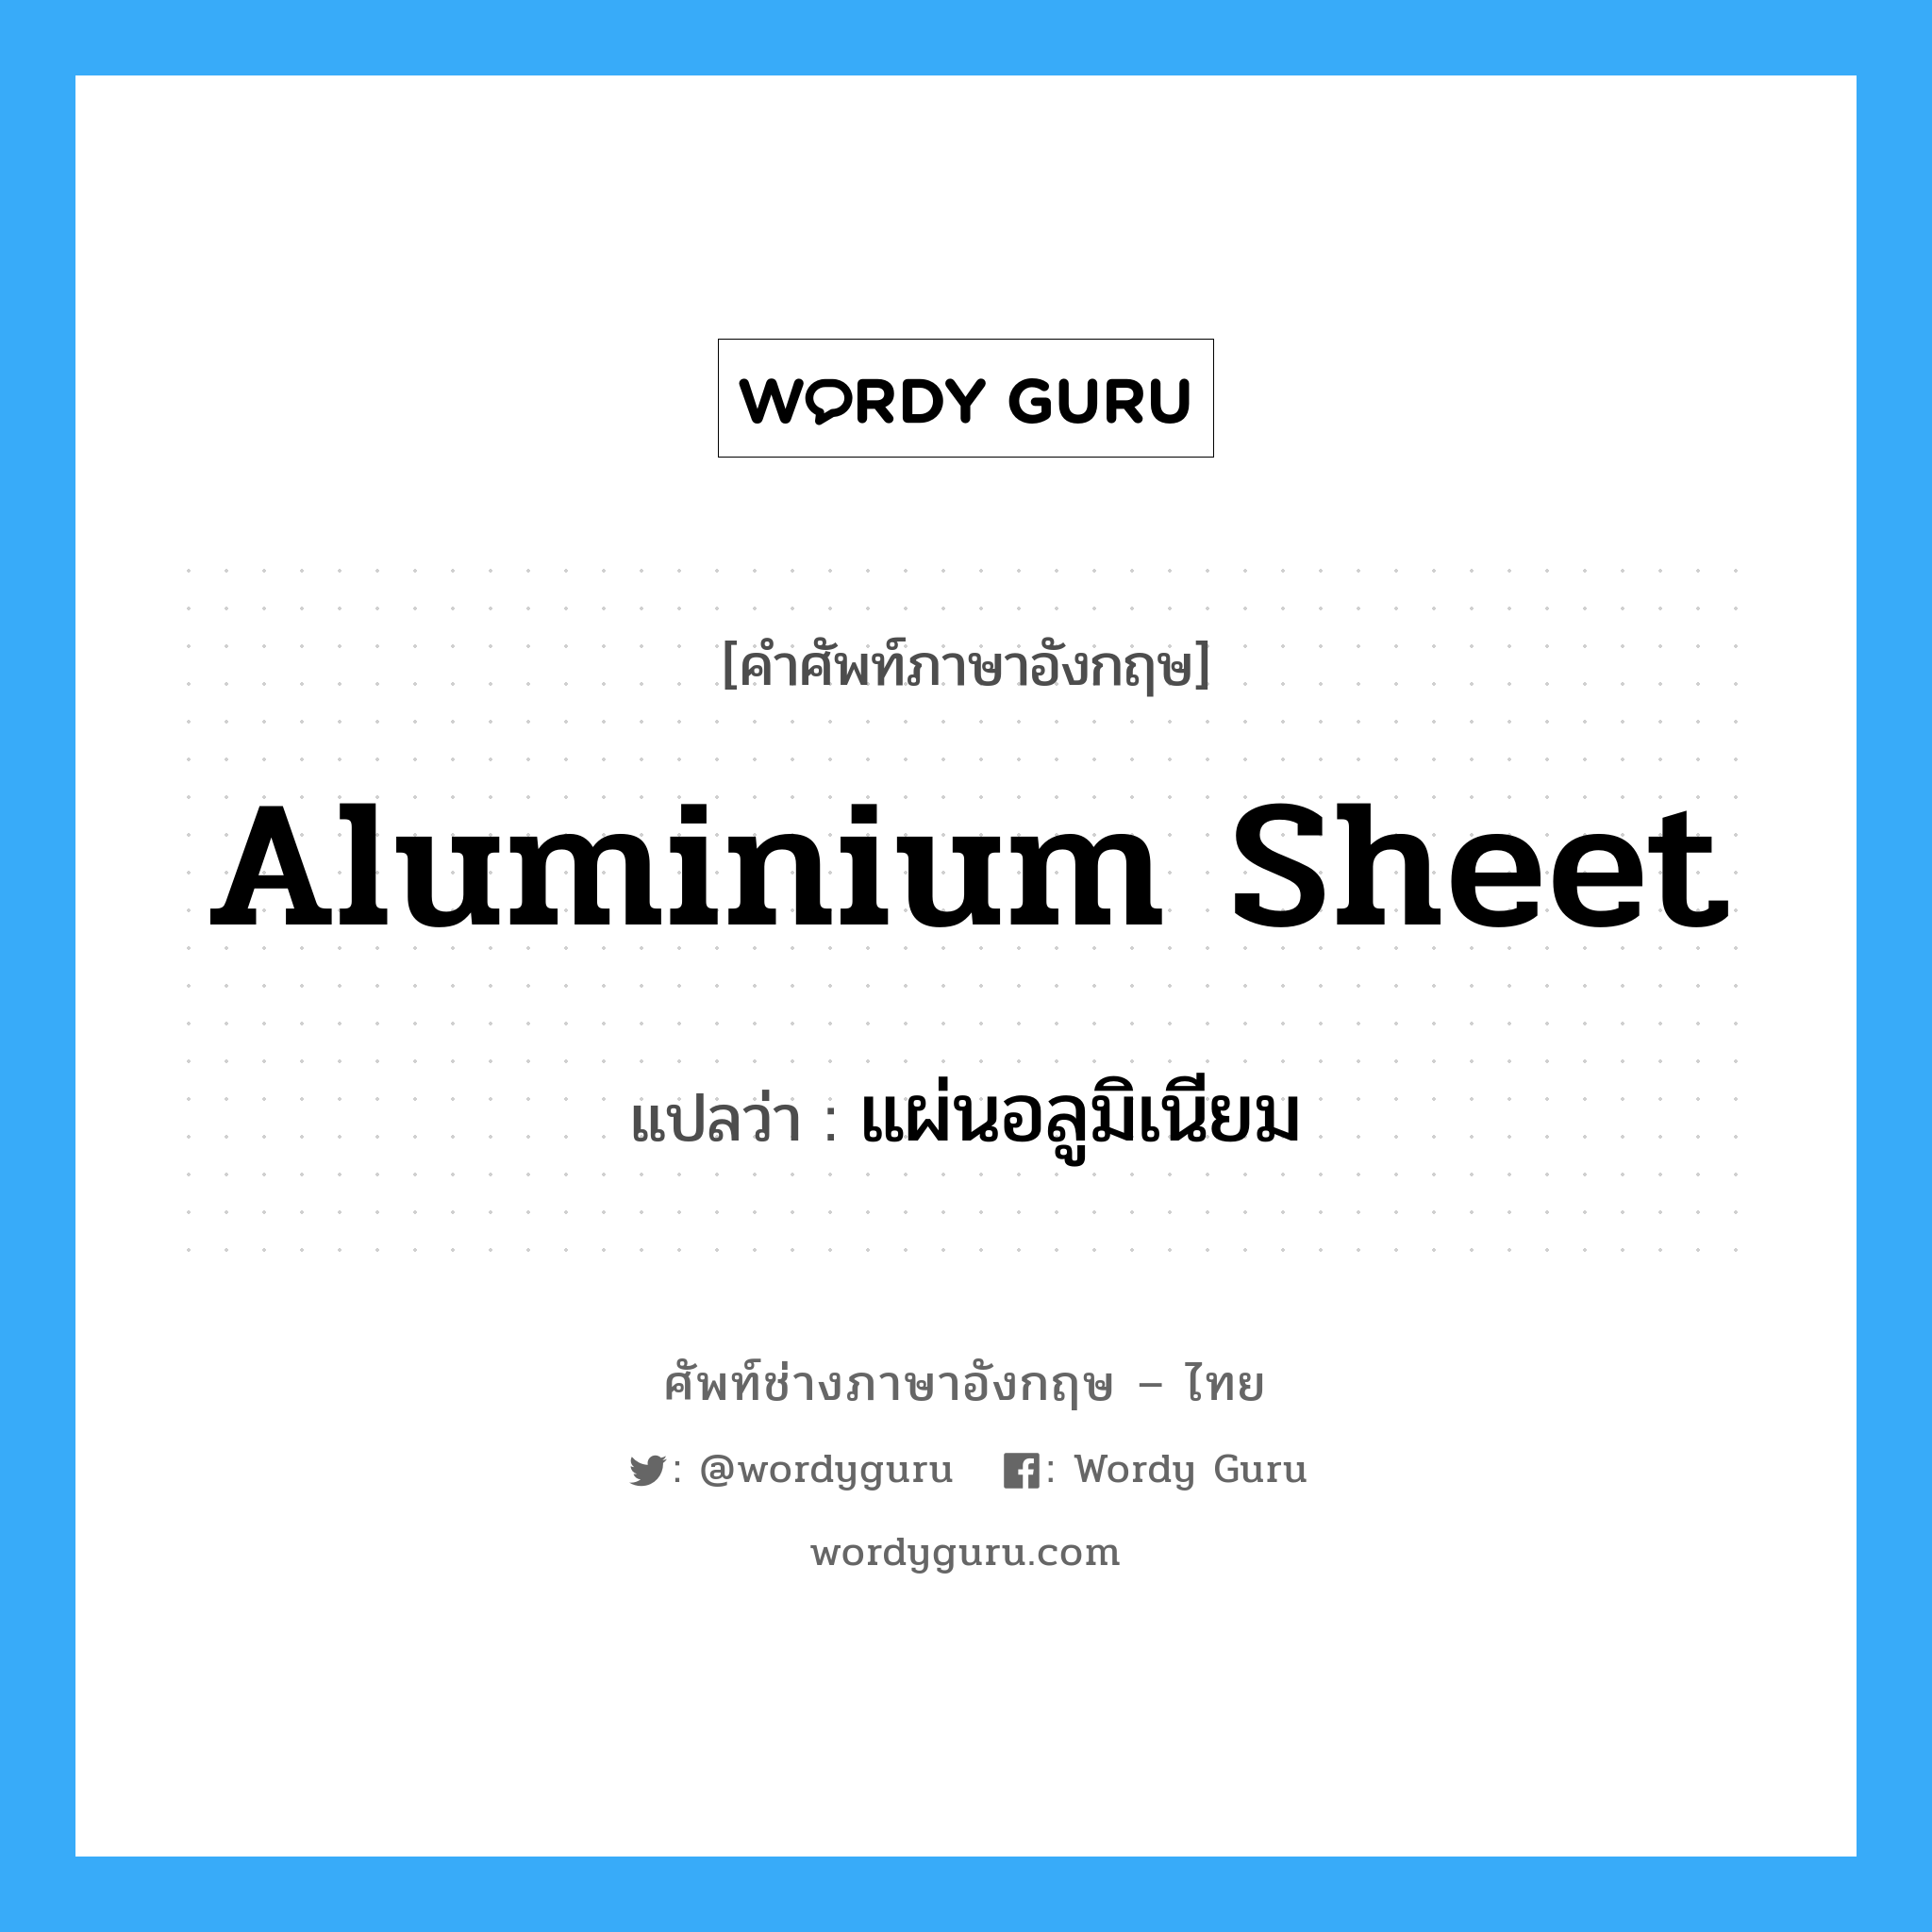 aluminium sheet แปลว่า?, คำศัพท์ช่างภาษาอังกฤษ - ไทย aluminium sheet คำศัพท์ภาษาอังกฤษ aluminium sheet แปลว่า แผ่นอลูมิเนียม